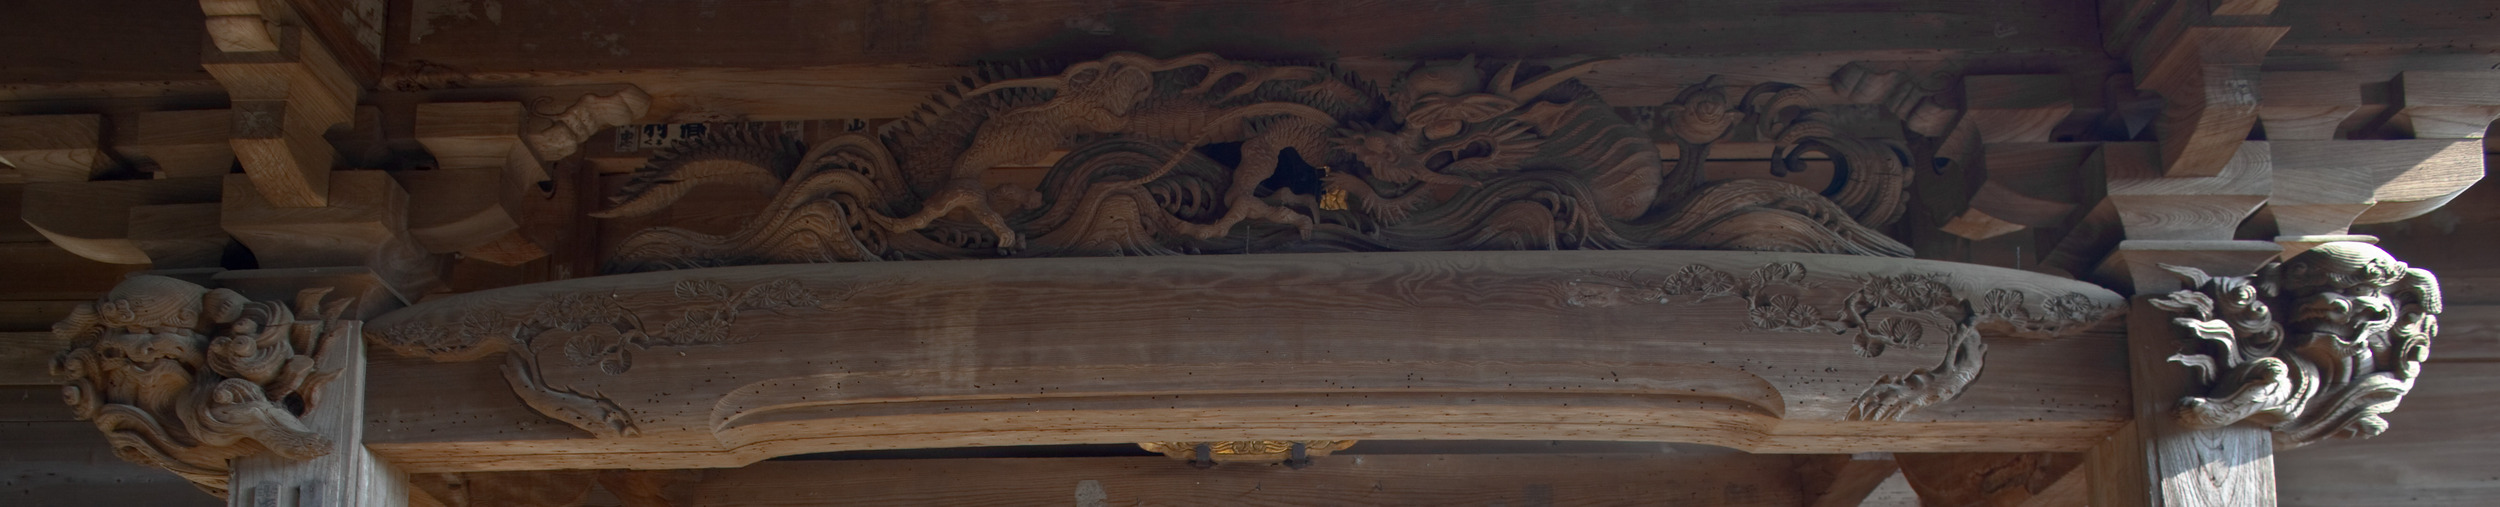 Дракон. Такой дракон вырезан в притолоке зданьица рядом с древним колоколом храма Хазе Каннон.